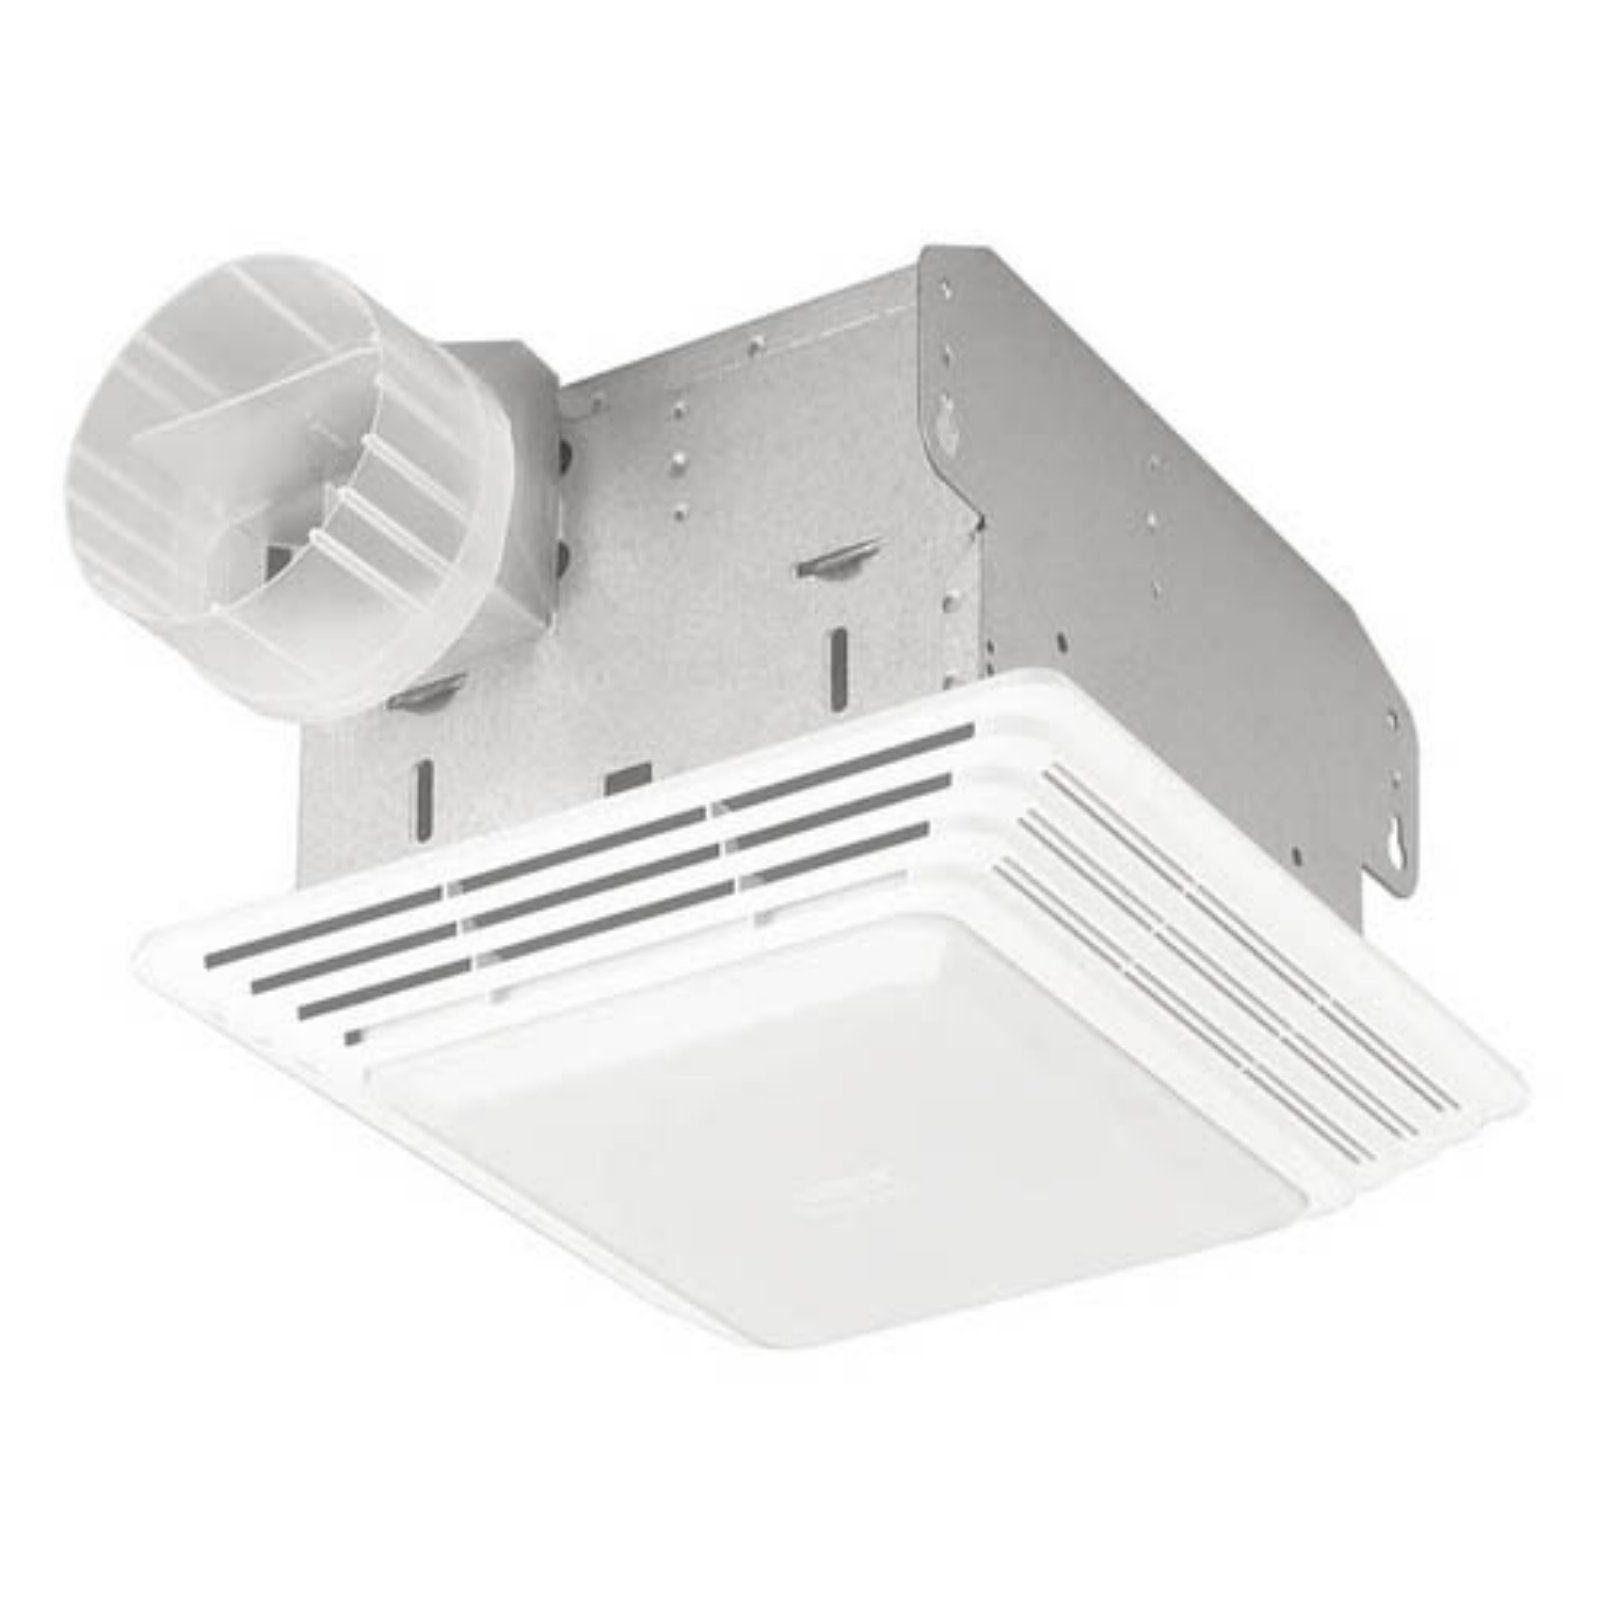 Broan Nutone 678 Bathroom Ventilation Fan Light In 2019 inside dimensions 1600 X 1600